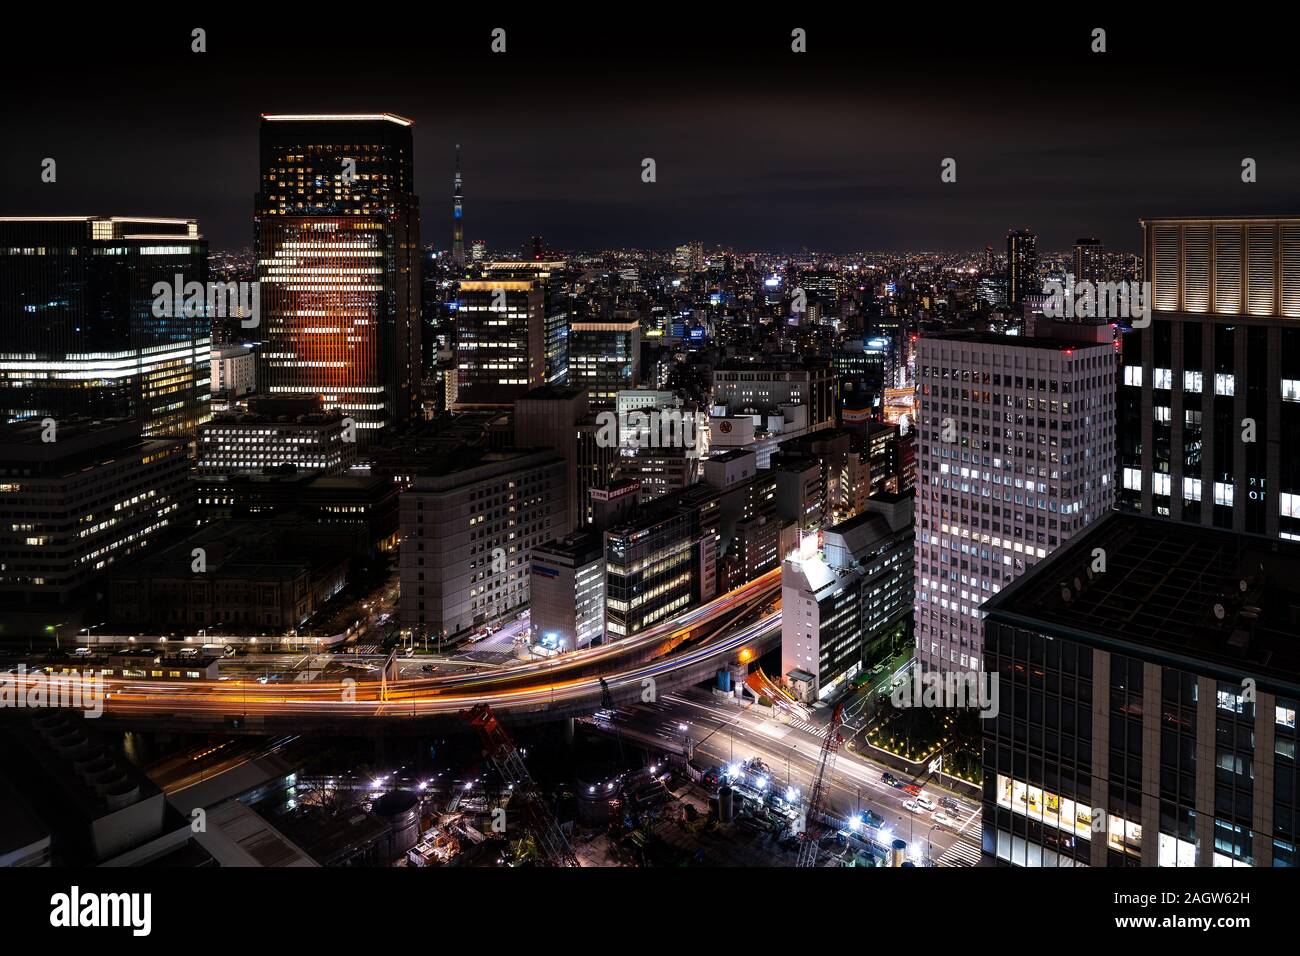 Tokio night skyline Stock Photo